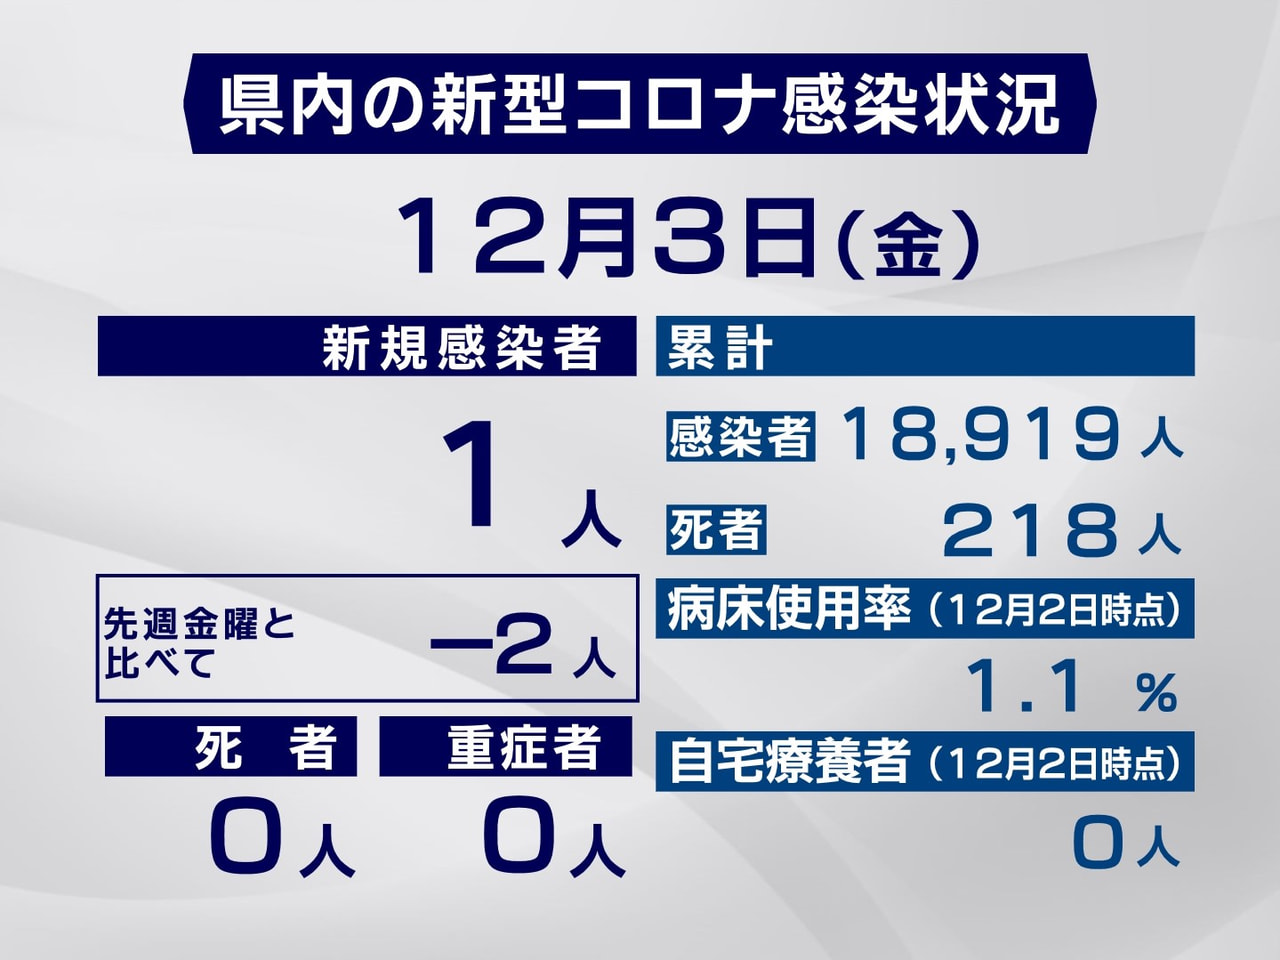 岐阜県は、３日、新型コロナウイルスの感染が新たに１人確認されたと発表しました。 ...